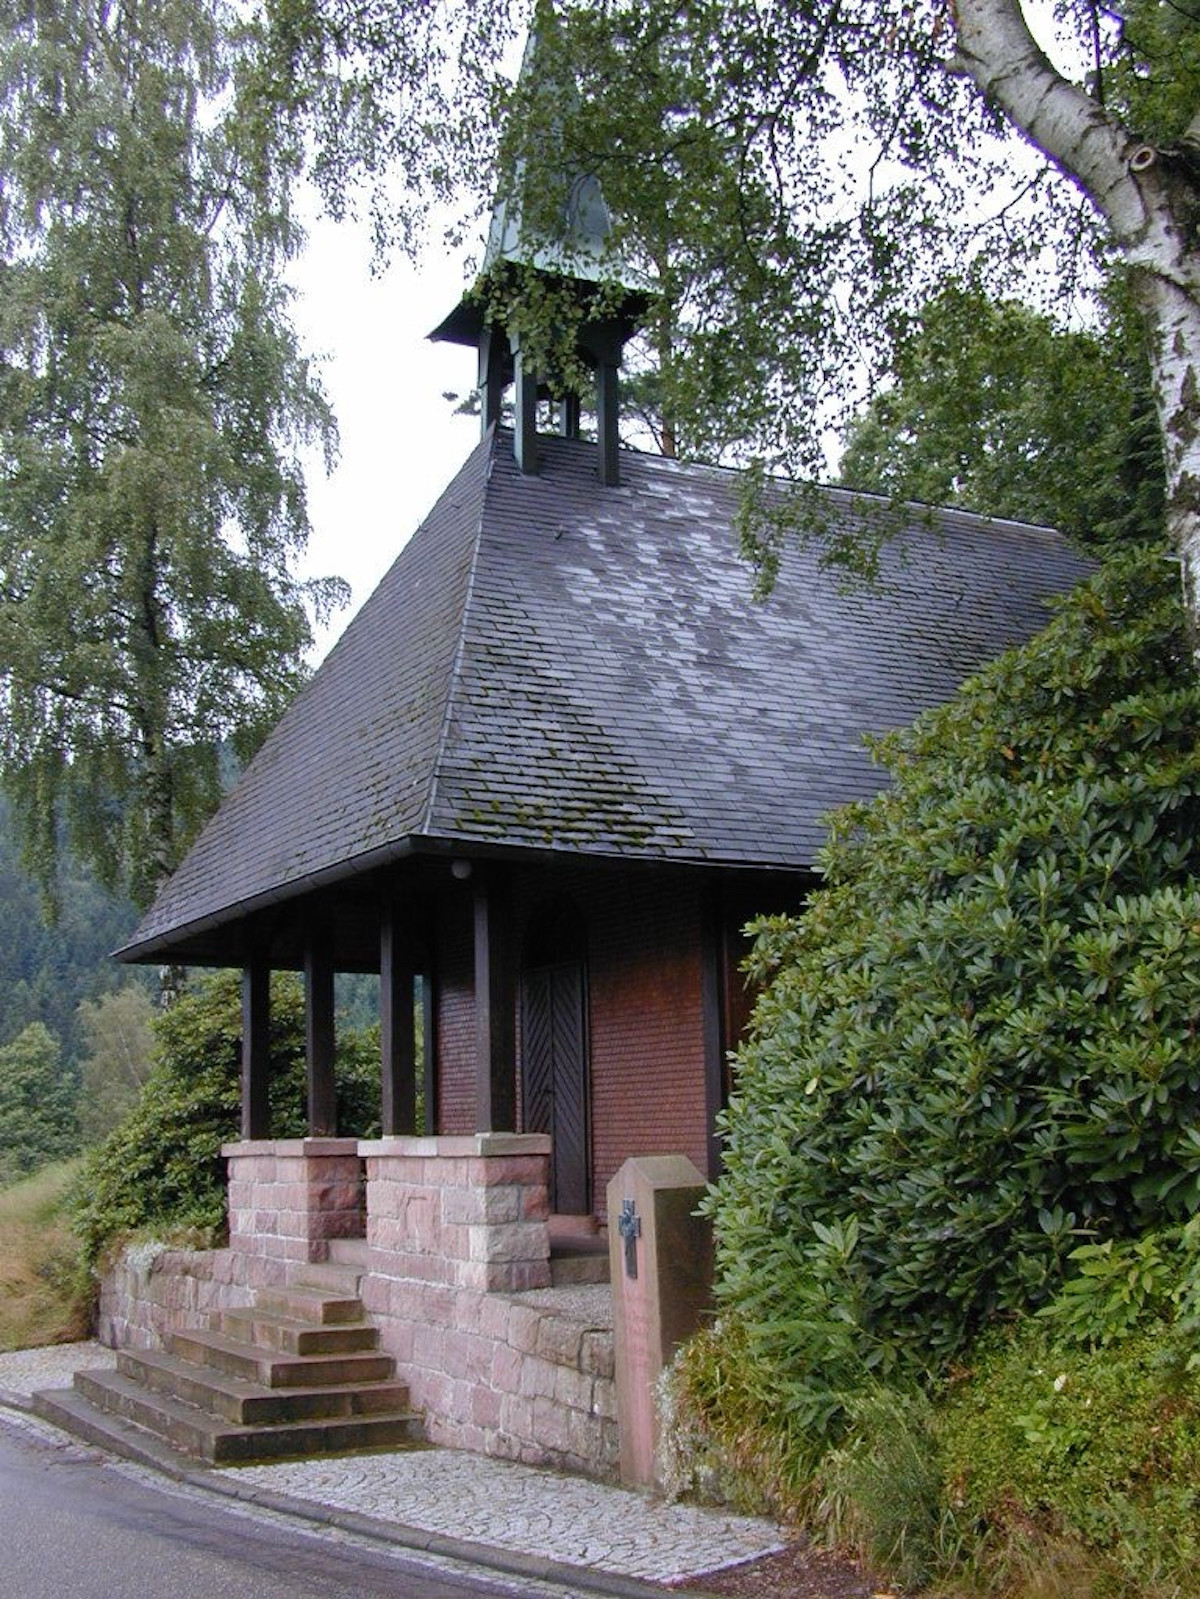                                                     Nothelferkapelle                                    